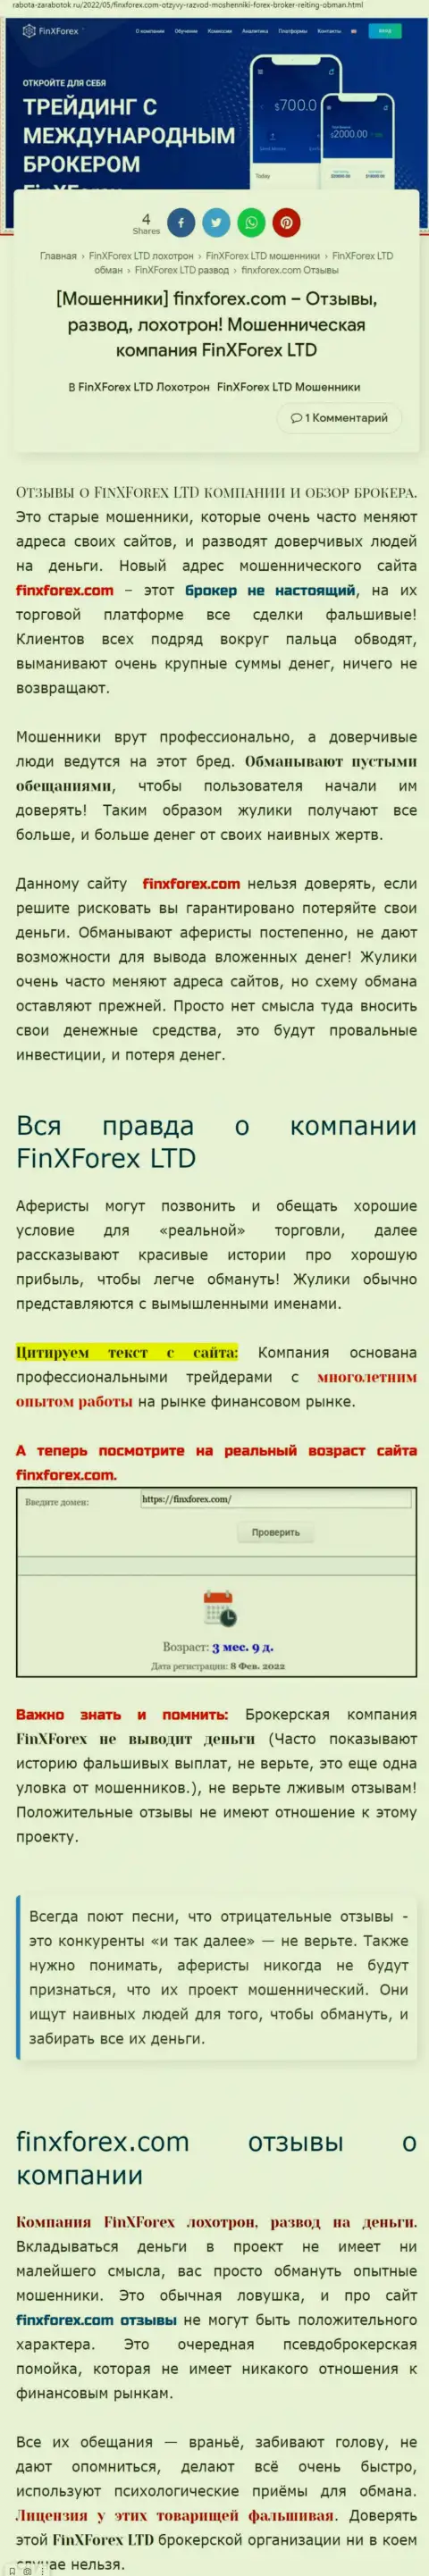 Автор статьи о FinXForex Com говорит, что в организации ФинИкс Форекс разводят